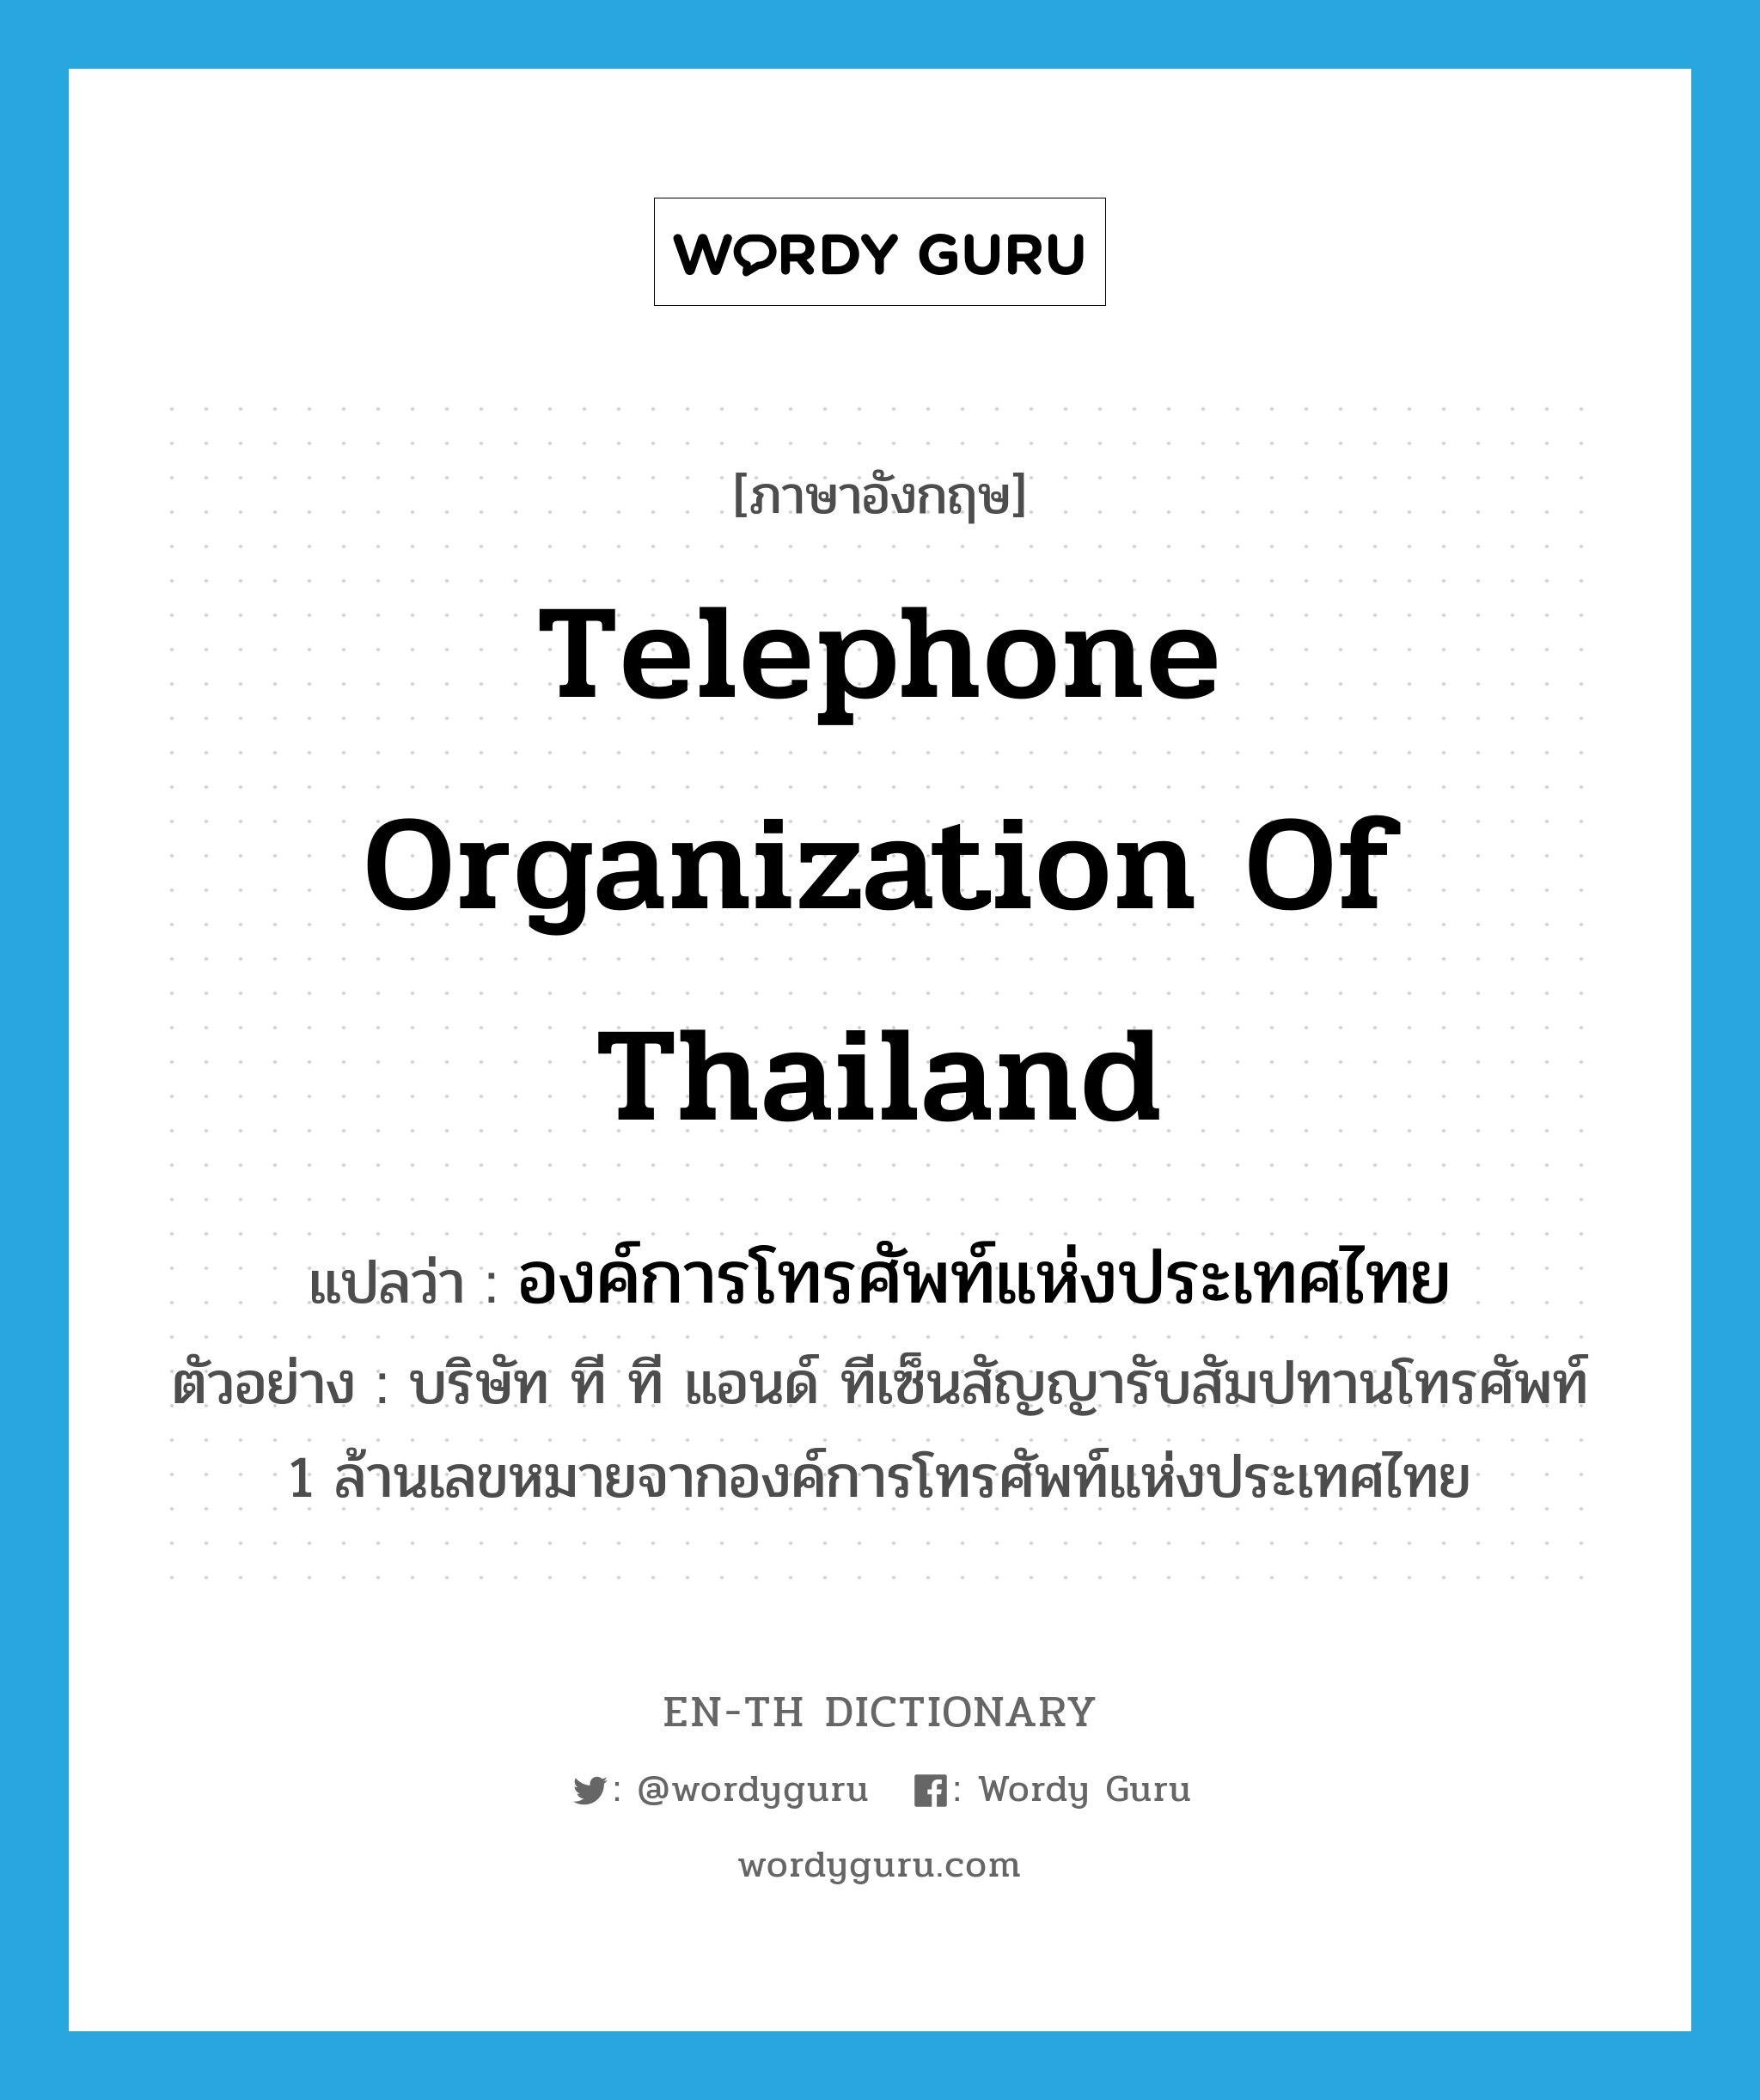 Telephone Organization of Thailand แปลว่า?, คำศัพท์ภาษาอังกฤษ Telephone Organization of Thailand แปลว่า องค์การโทรศัพท์แห่งประเทศไทย ประเภท N ตัวอย่าง บริษัท ที ที แอนด์ ทีเซ็นสัญญารับสัมปทานโทรศัพท์ 1 ล้านเลขหมายจากองค์การโทรศัพท์แห่งประเทศไทย หมวด N